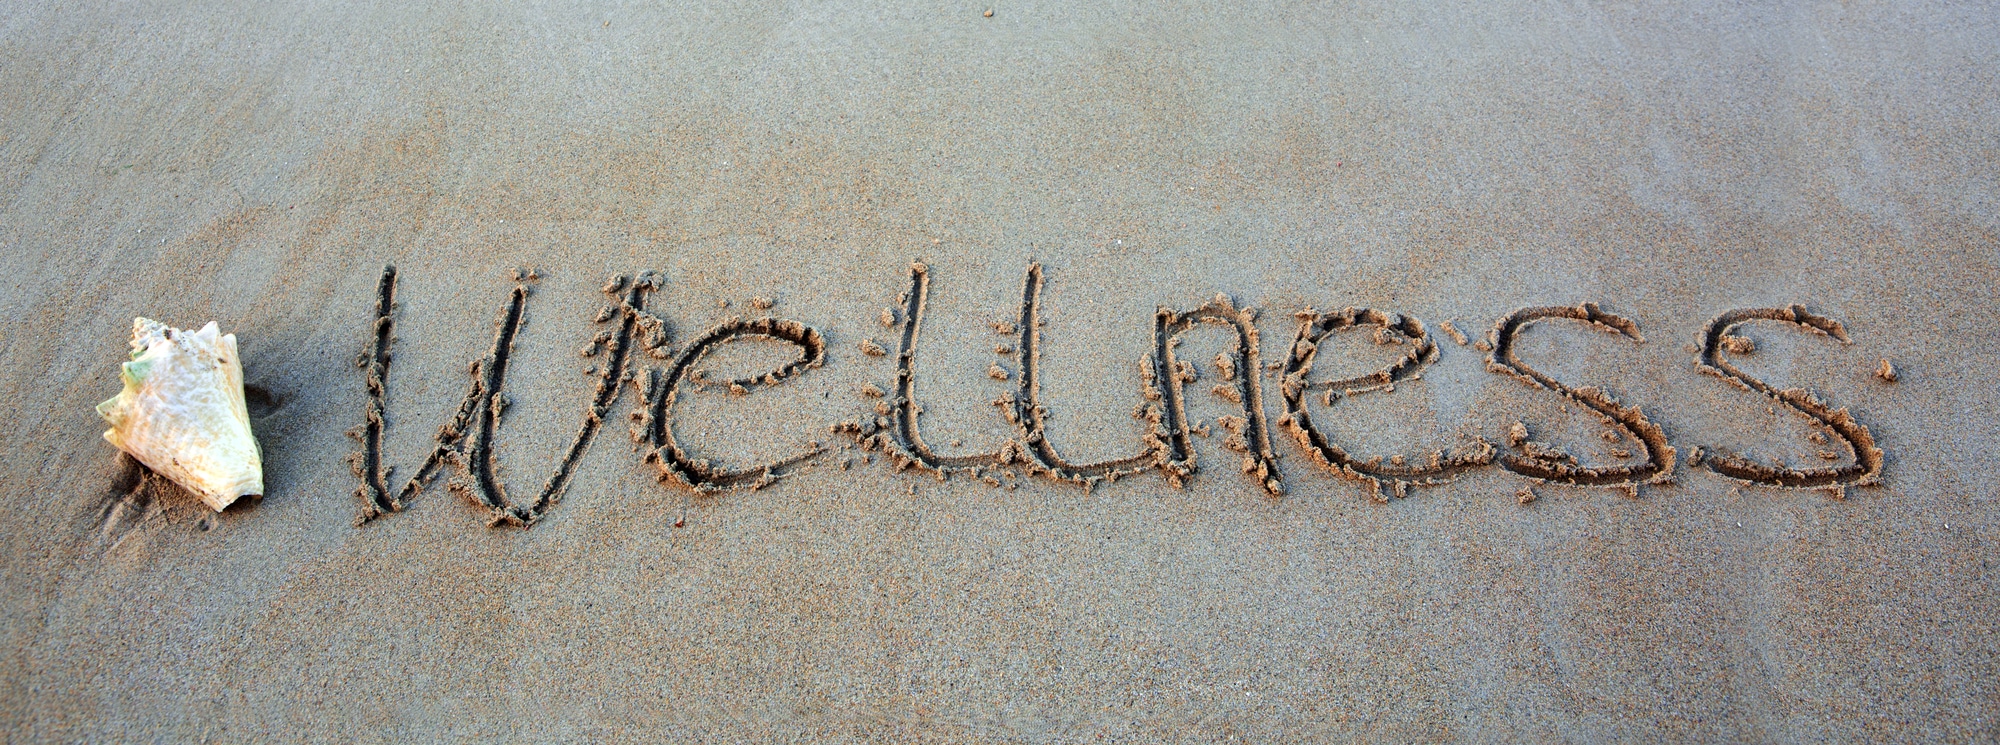 Как пишется слово расслабиться. Пишет на песке.